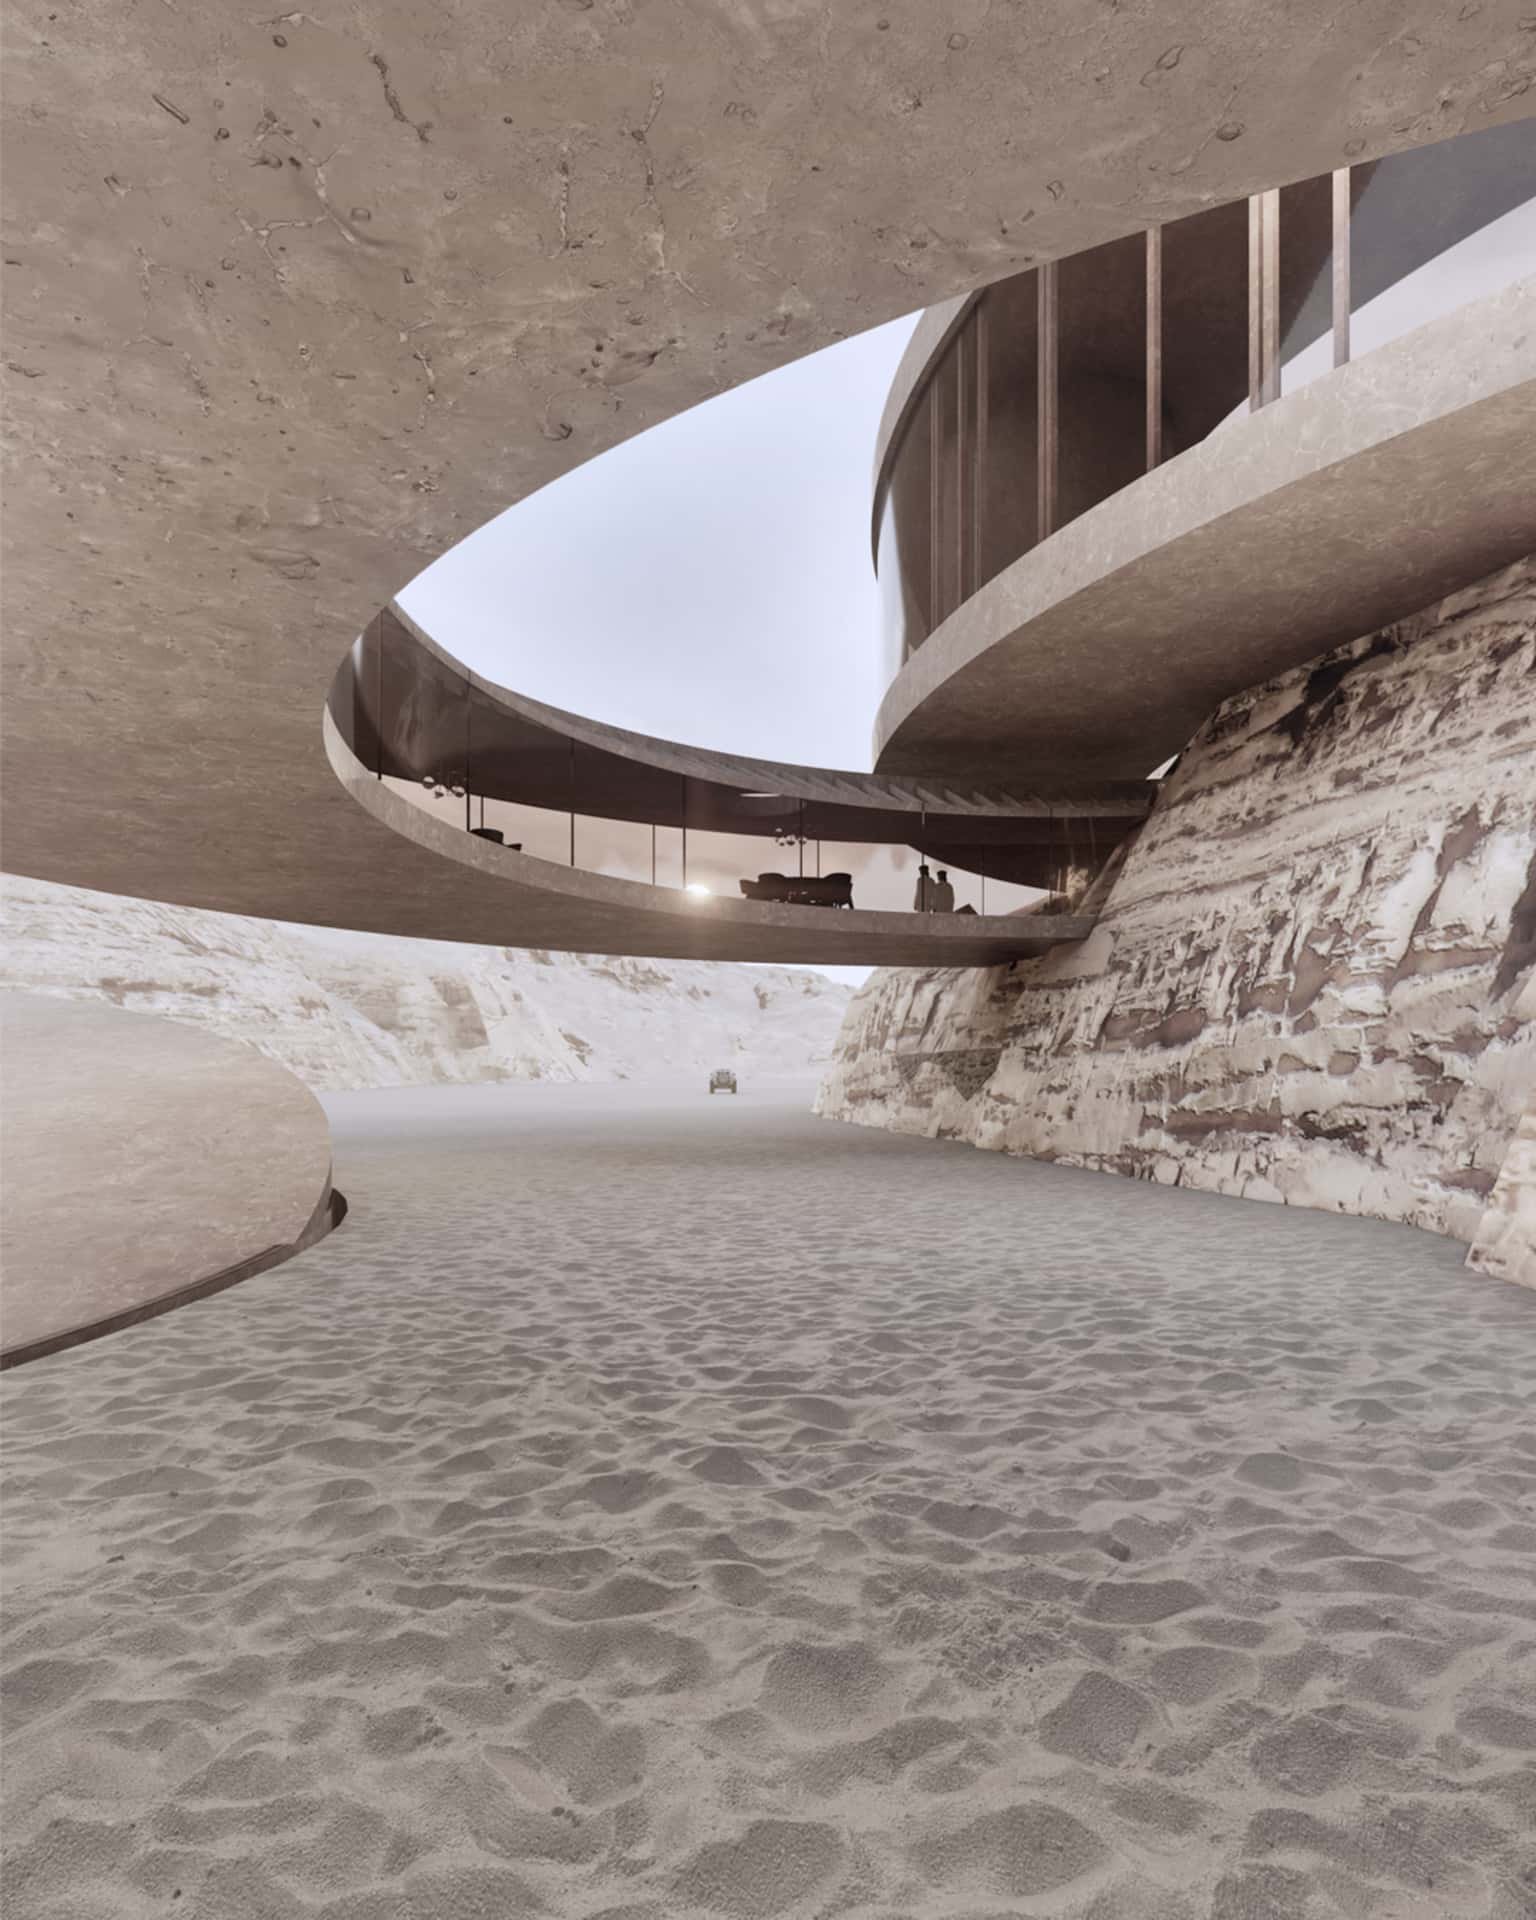 KOHLERSTRAUMANN's 'Dayira' Is An Oasis House Standing In The Desert